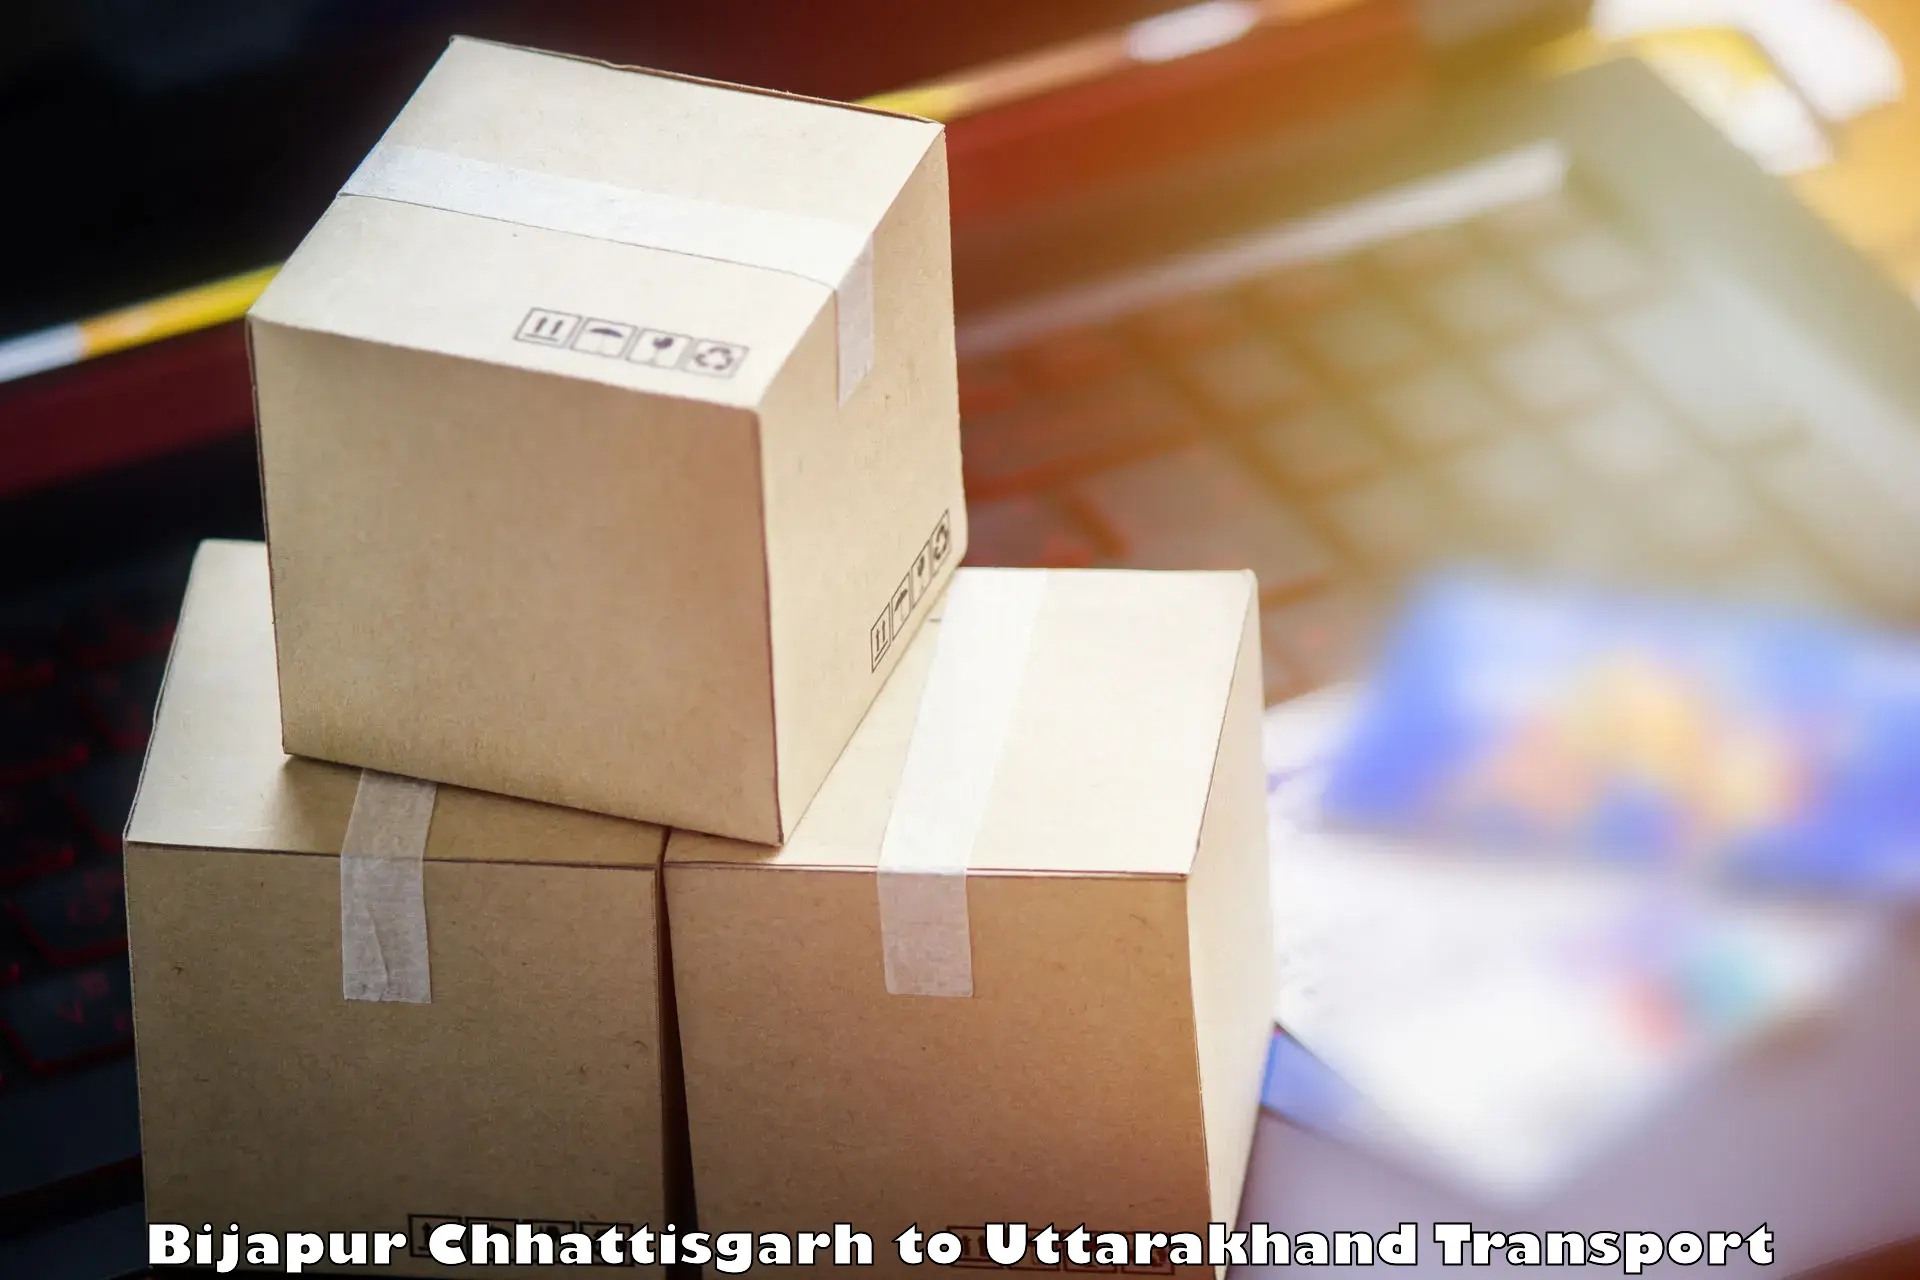 Road transport online services Bijapur Chhattisgarh to IIT Roorkee